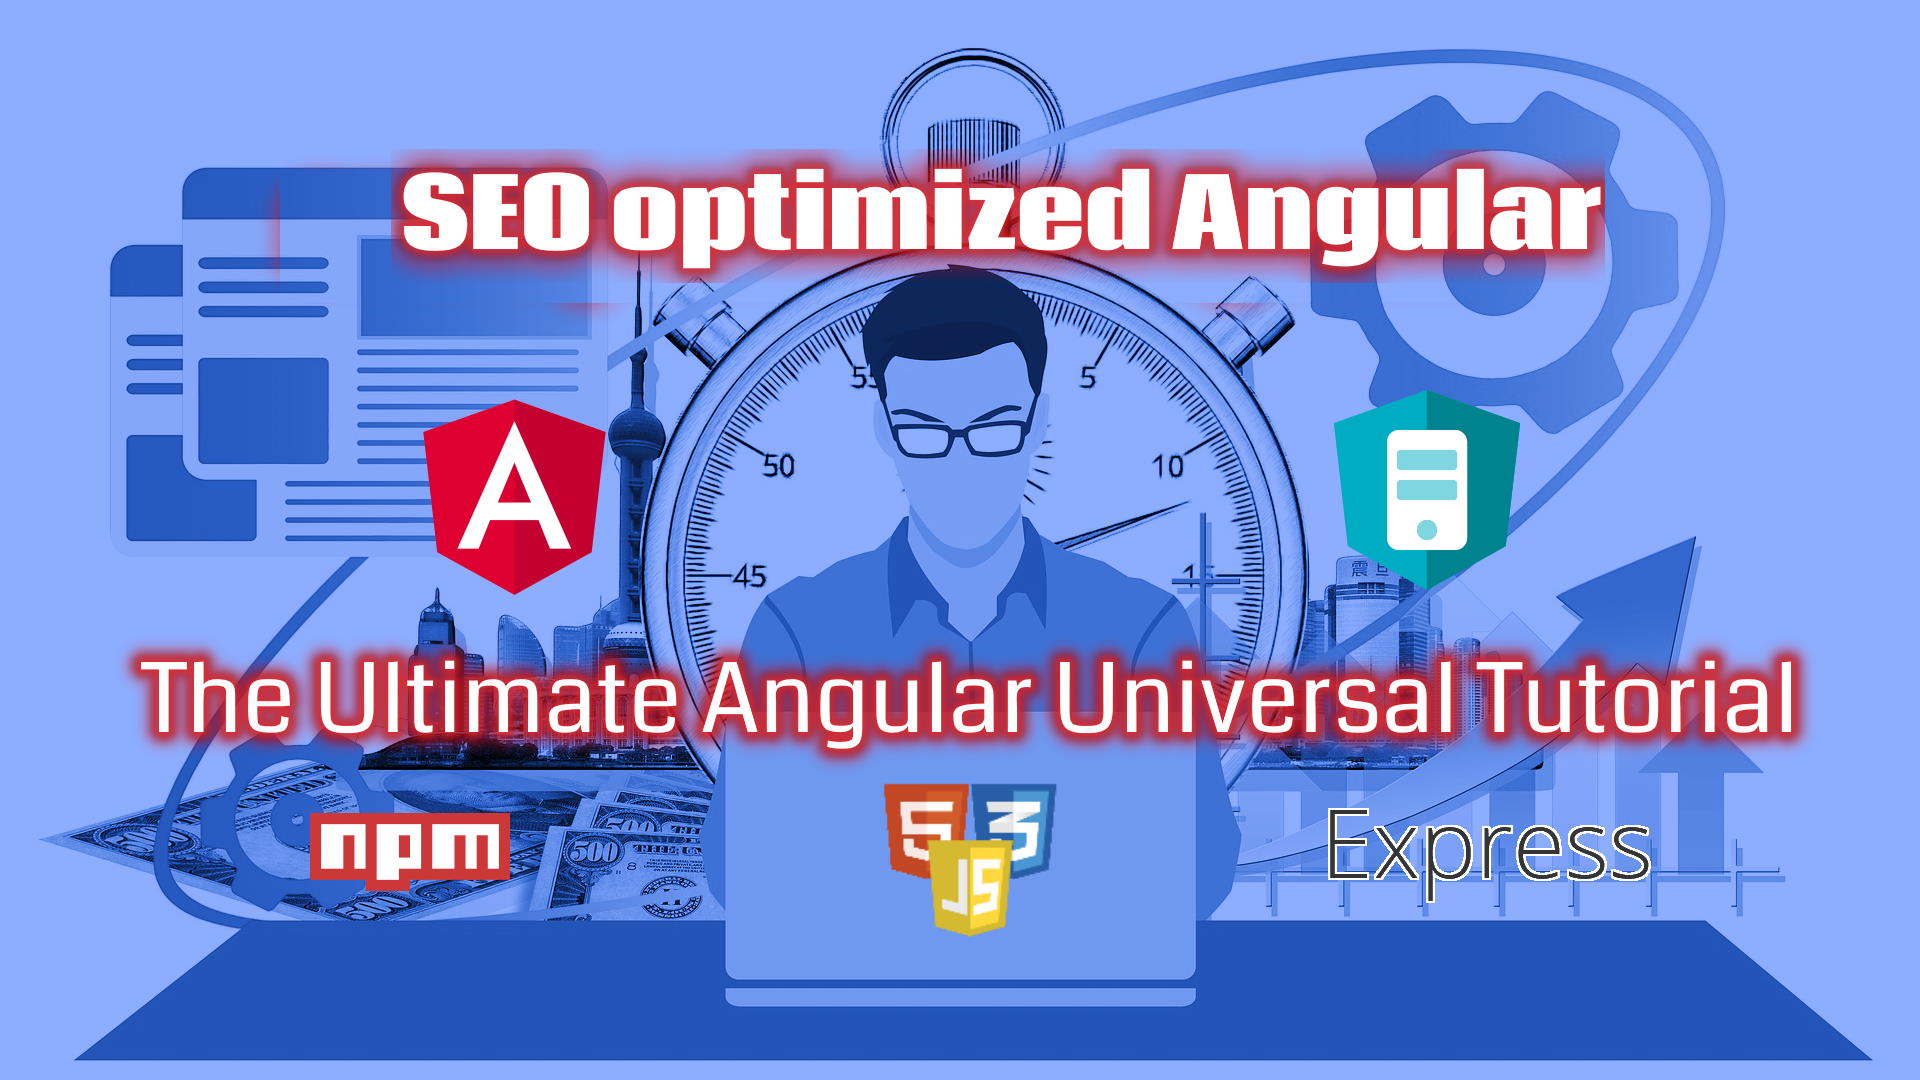 SEO optimized Angular - The Ultimate Angular Universal Tutorial